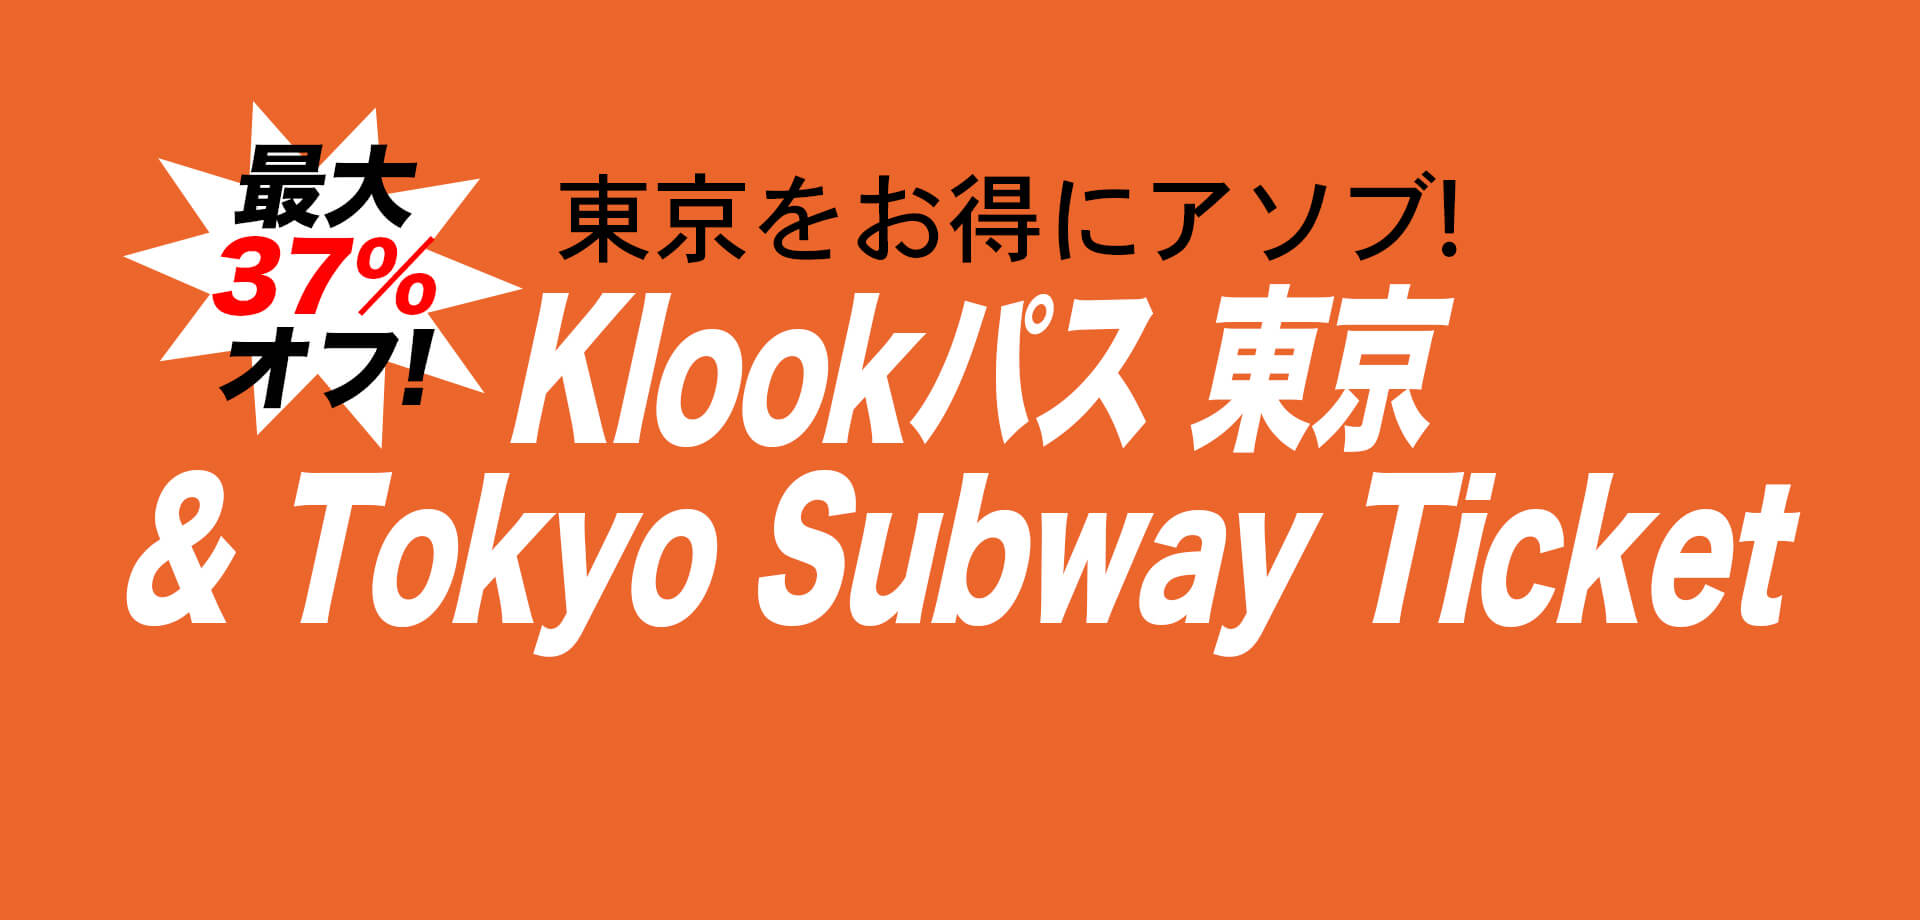 東京メトロ・東京都交通局・Klookの3社局共同企画「Klookパス 東京 & Tokyo Subway Ticket 」